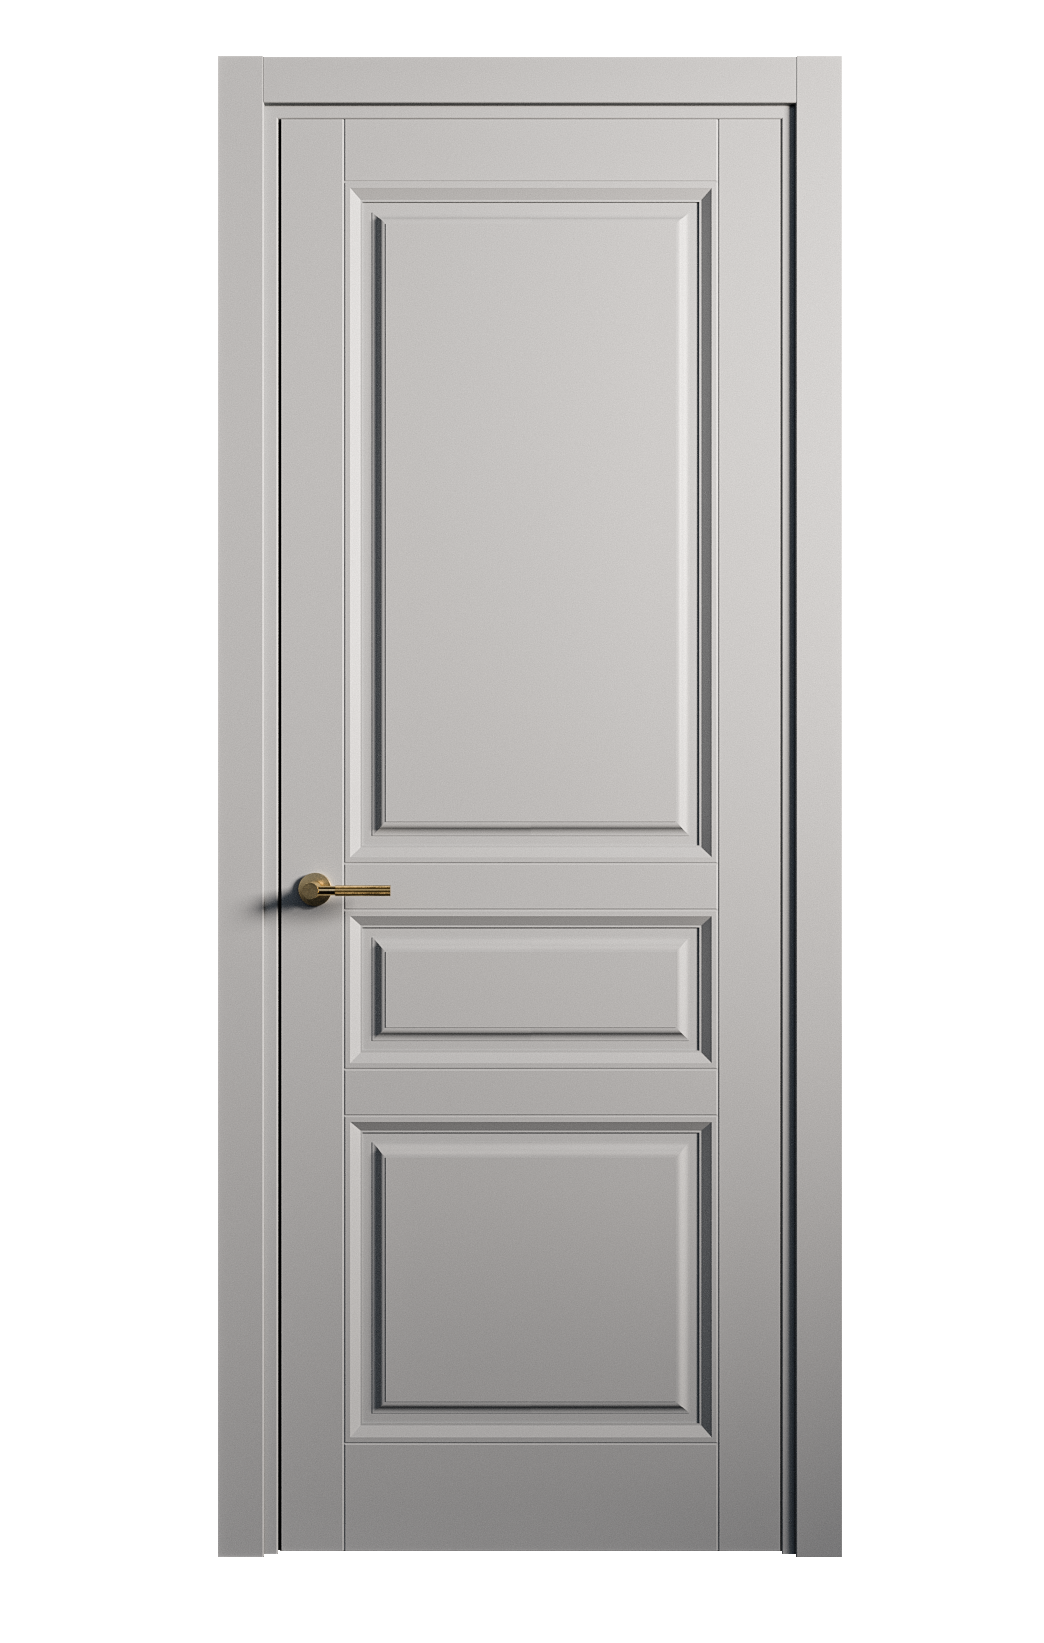 Межкомнатная дверь Venezia-2 глухая эмаль ral 7040 25743